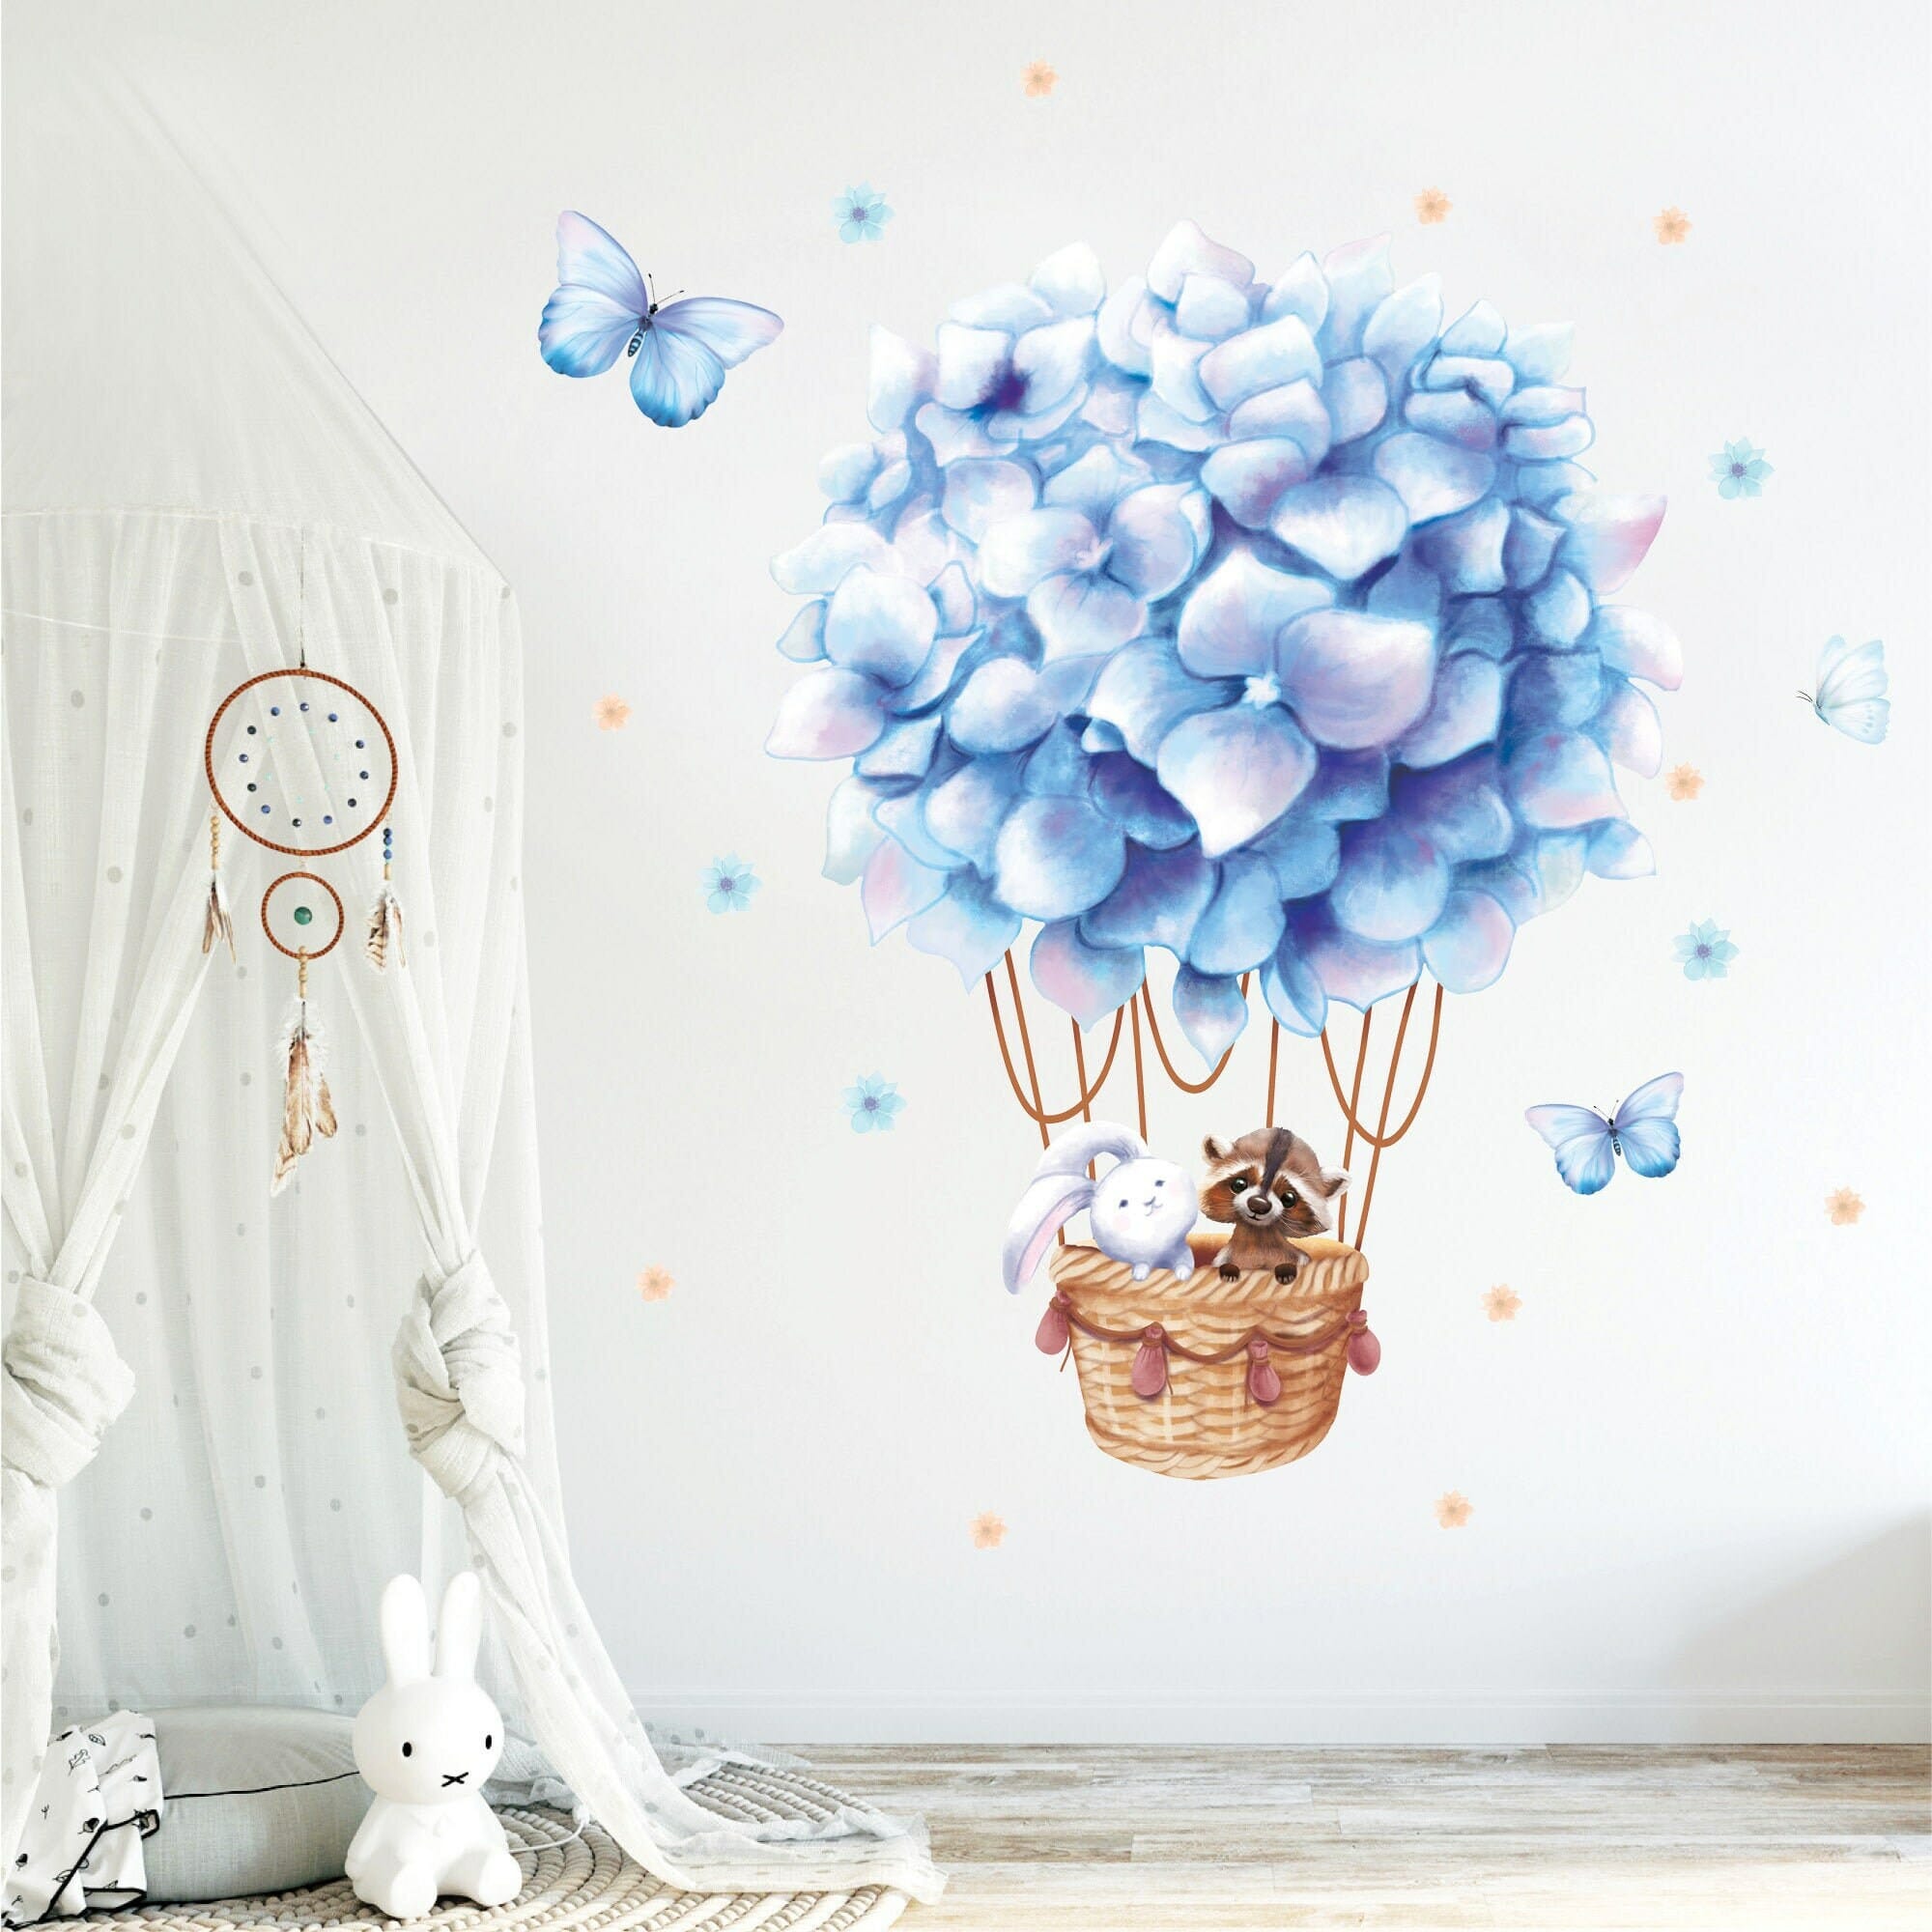 Wandtattoo Kinderzimmer Junge Heißluftballon Waschbär Hase Junge Babyzimmer Farbige Wandbilder